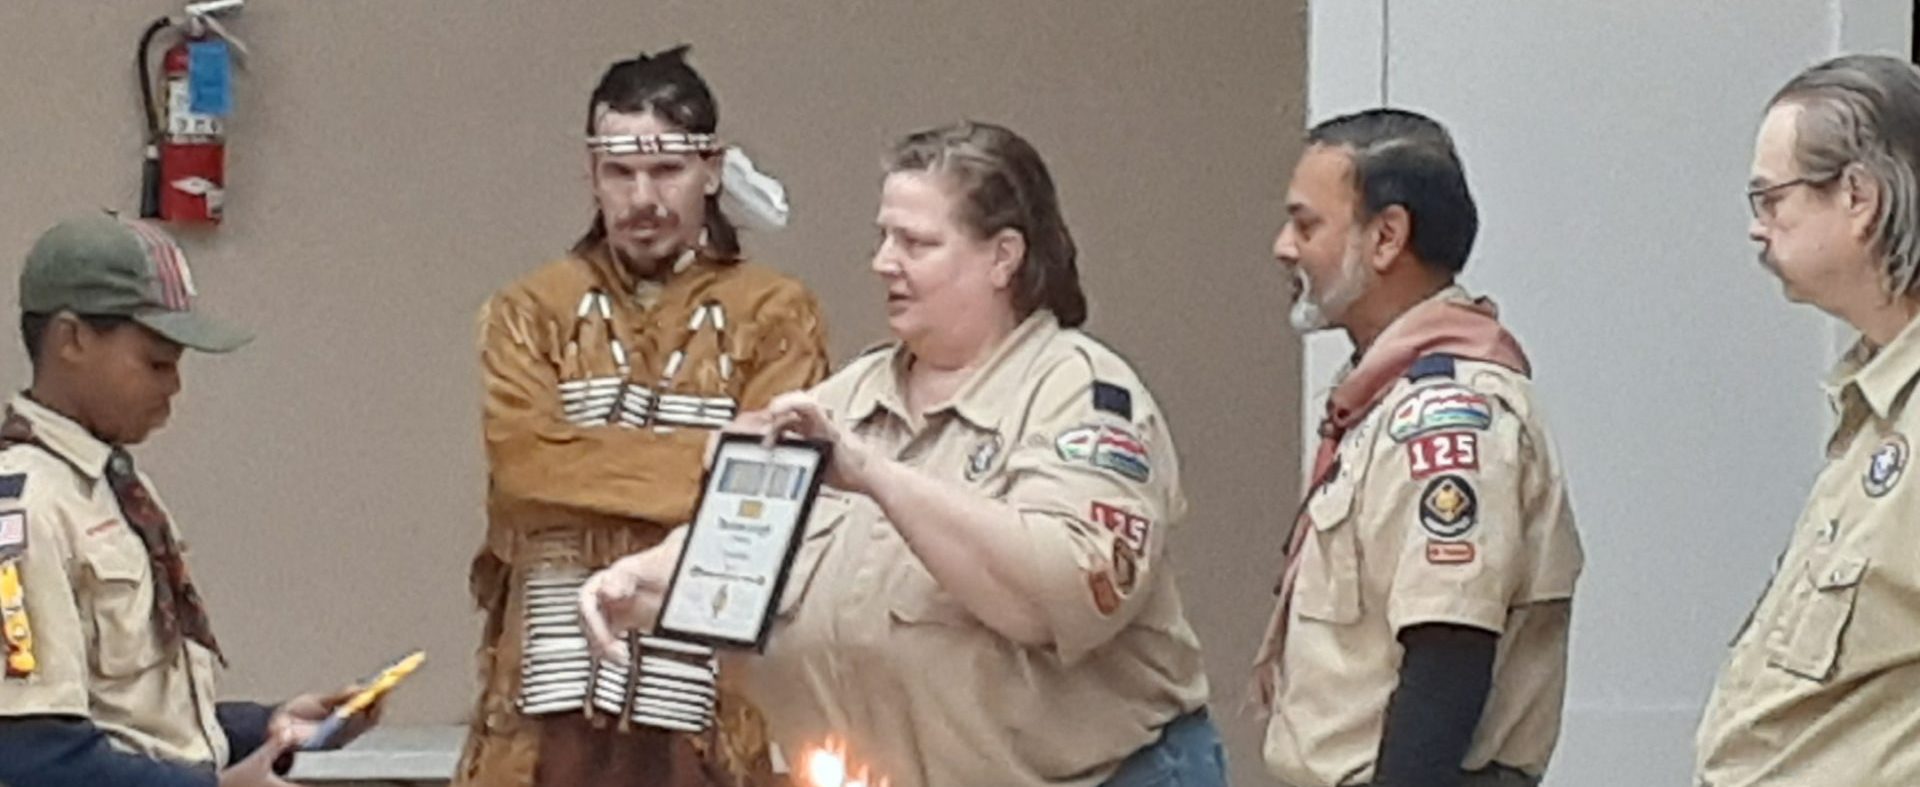 Scout winning an award